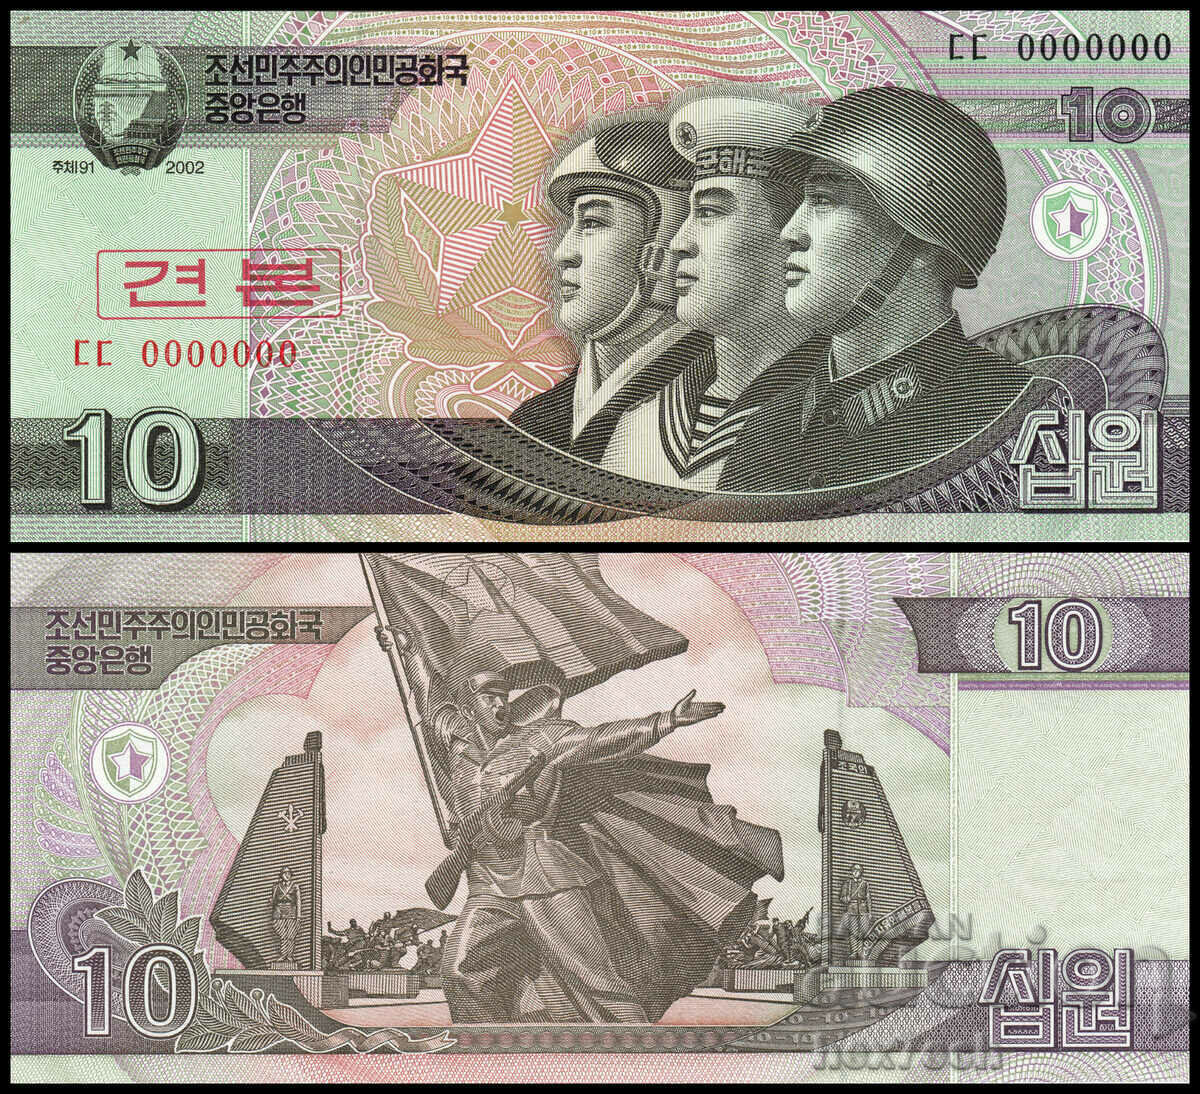 ❤️ ⭐ Βόρεια Κορέα 2002 Δείγμα 10 won UNC νέο ❤️